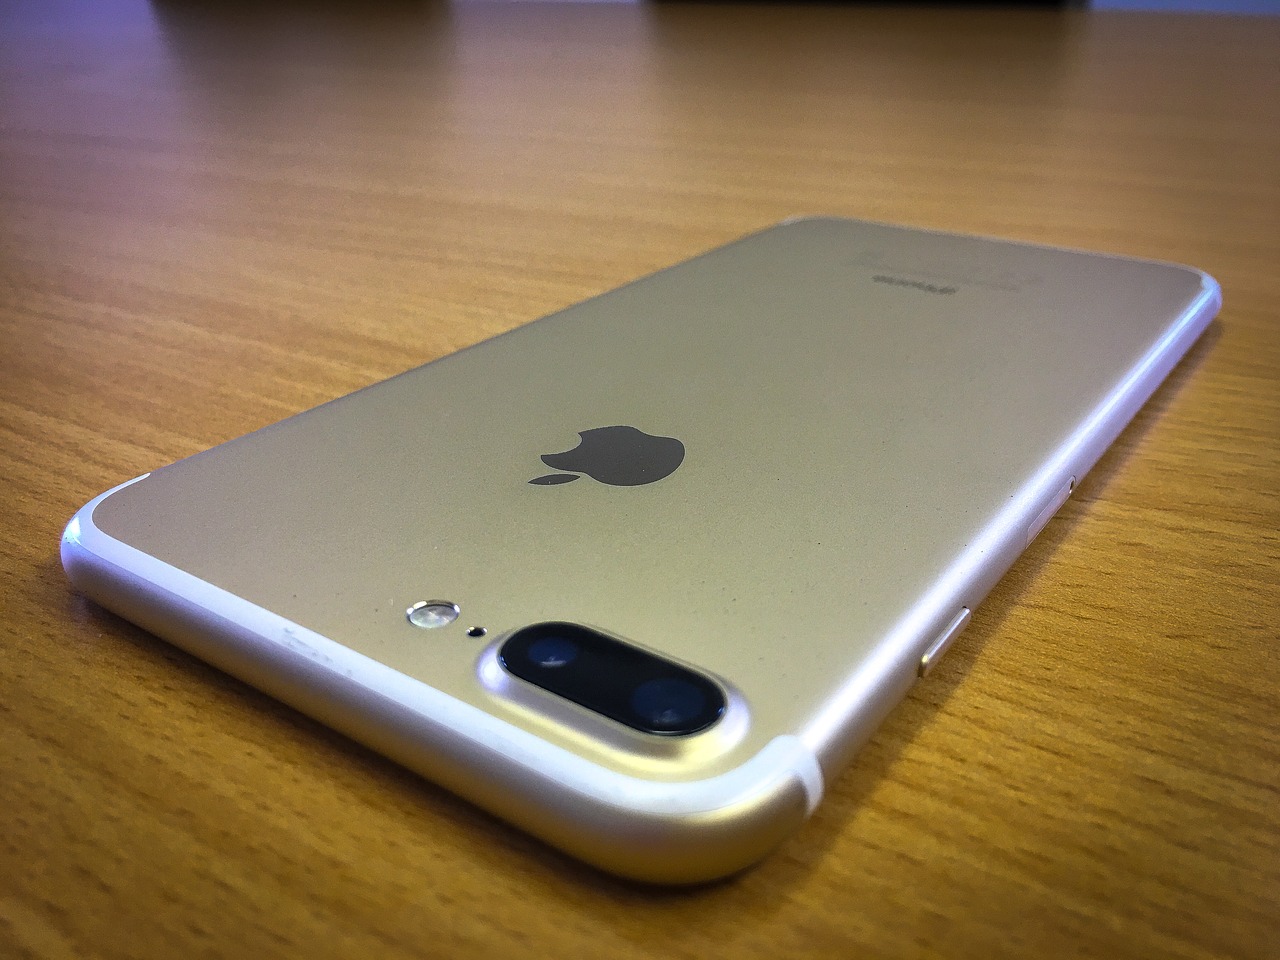 Alrededor de US$500 millones pagará Apple por hacer los iPhones antiguos más lentos a propósito